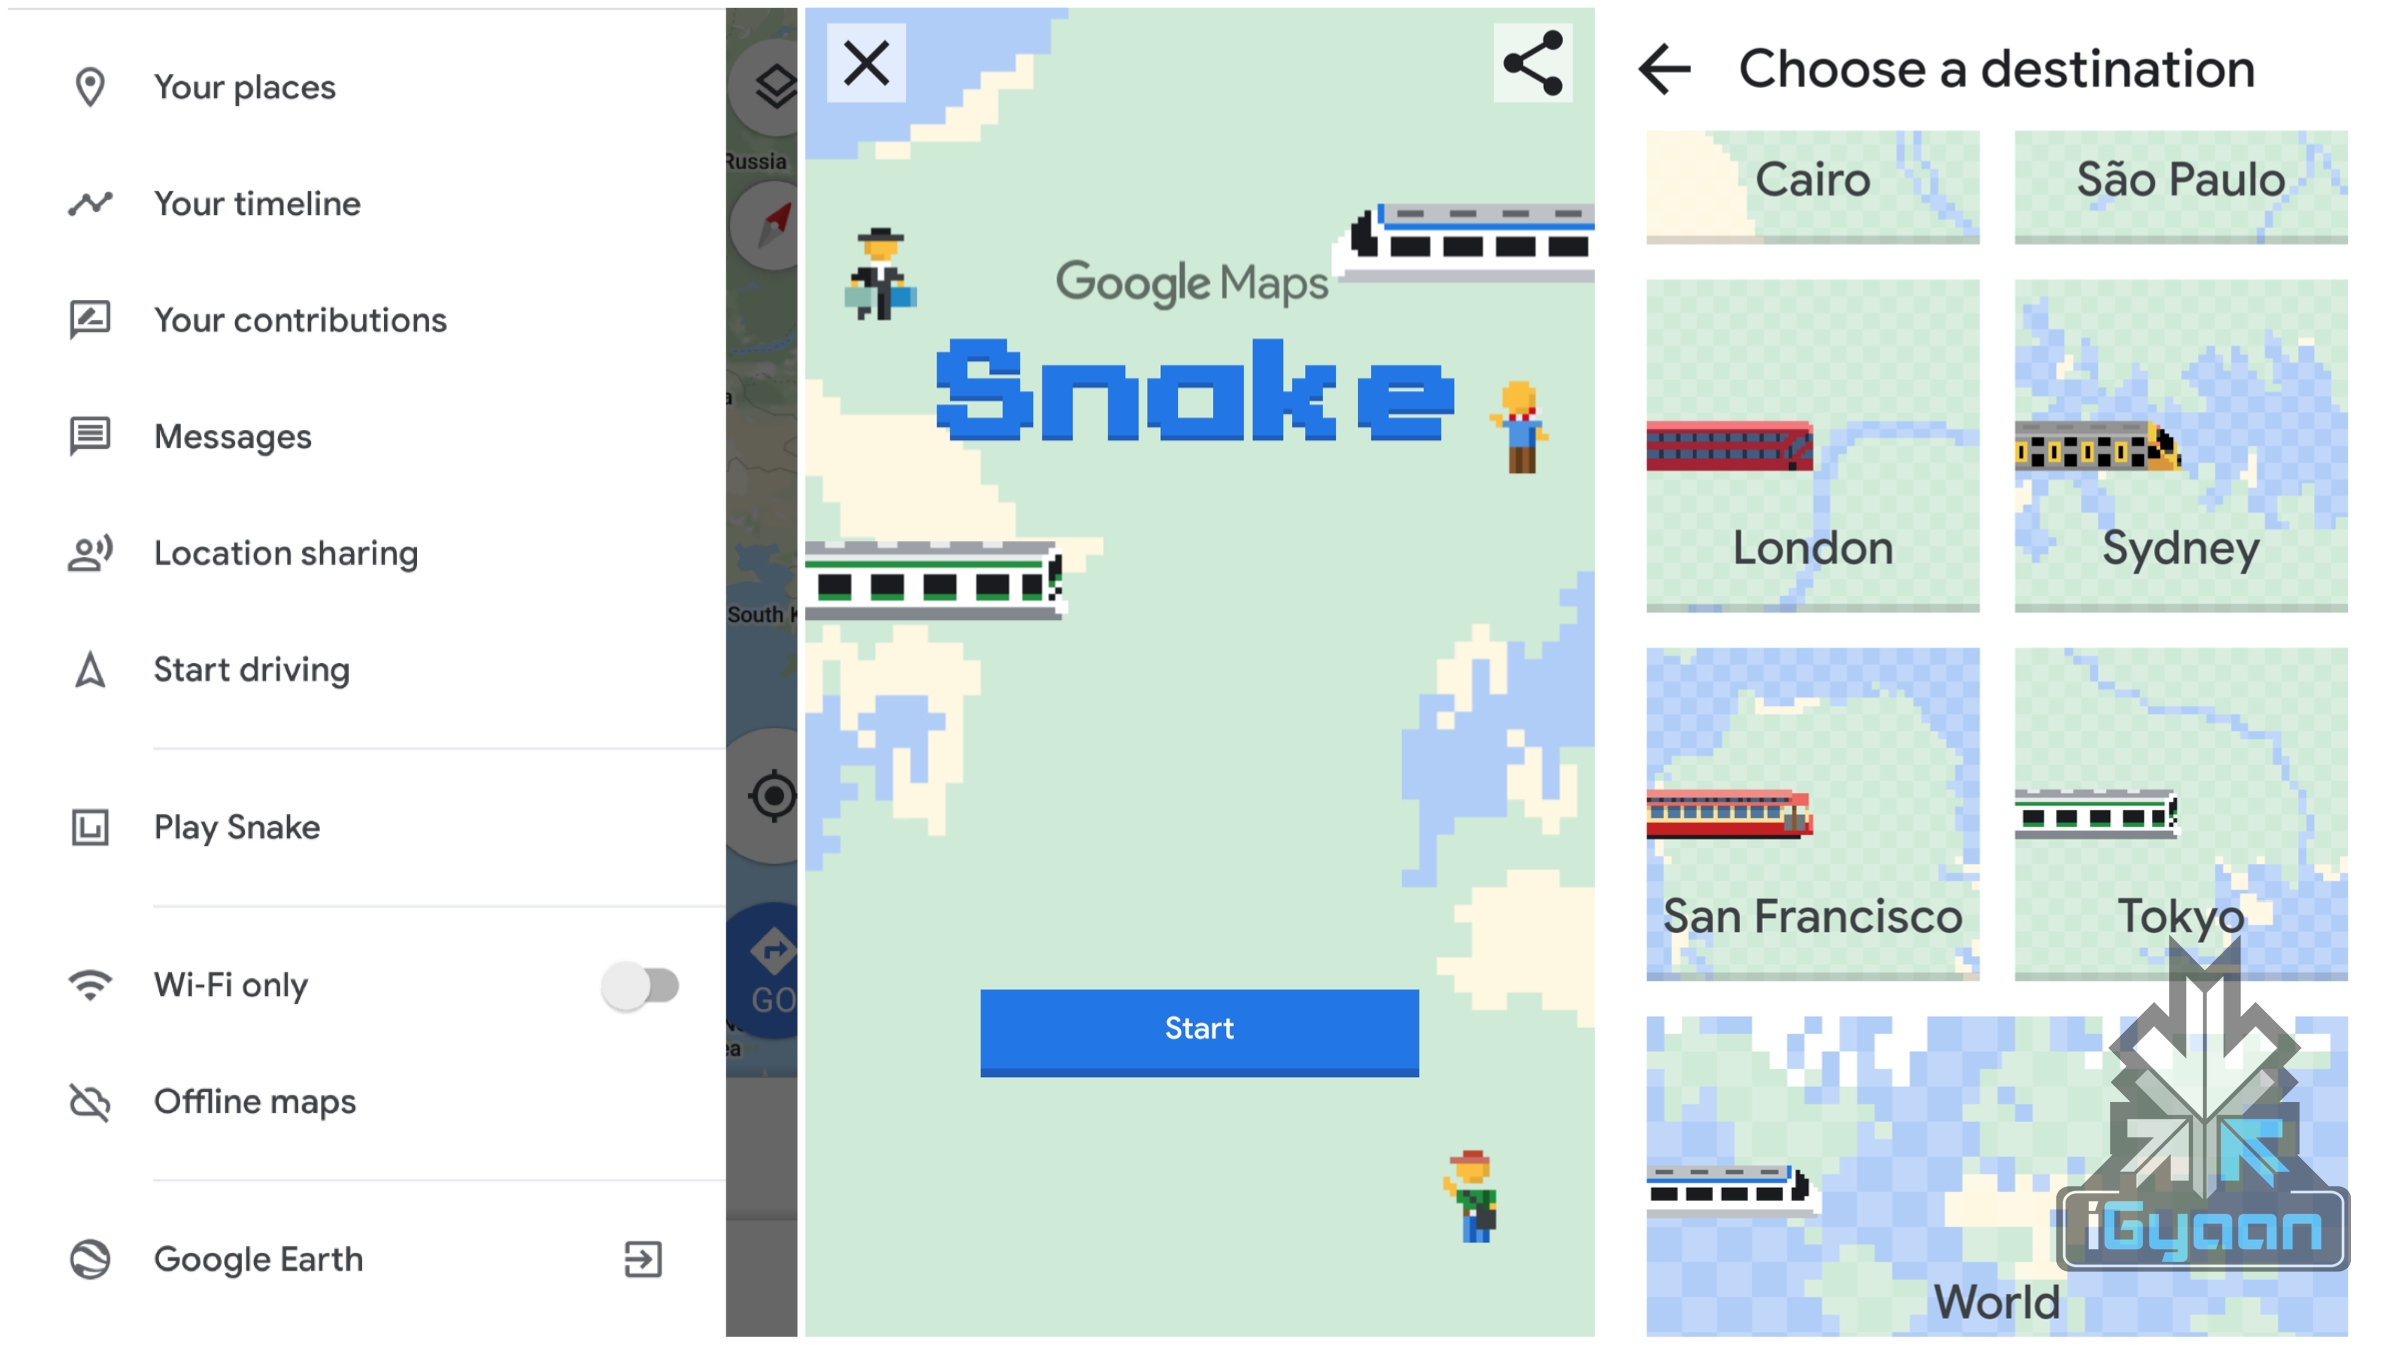 No dia 1 de Abril, vai poder jogar Snake no Google Maps! - Leak